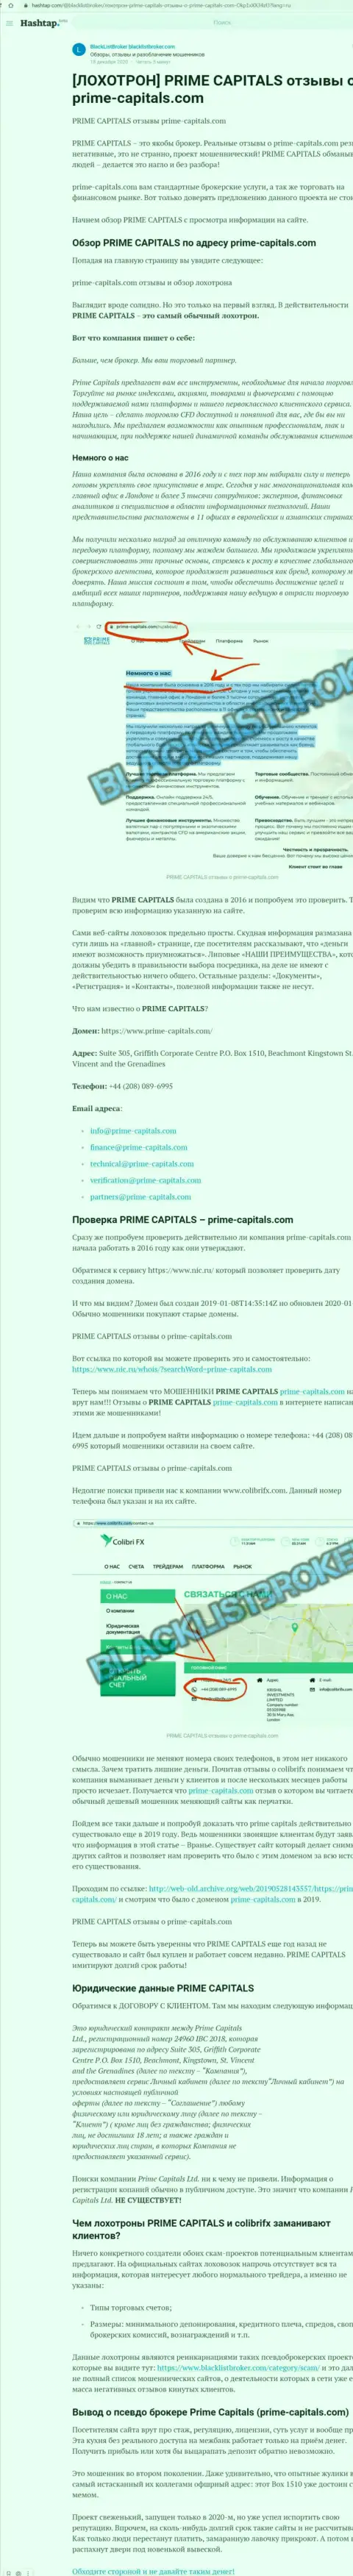 Prime Capitals это наглый обман реальных клиентов (статья с обзором противозаконных деяний)